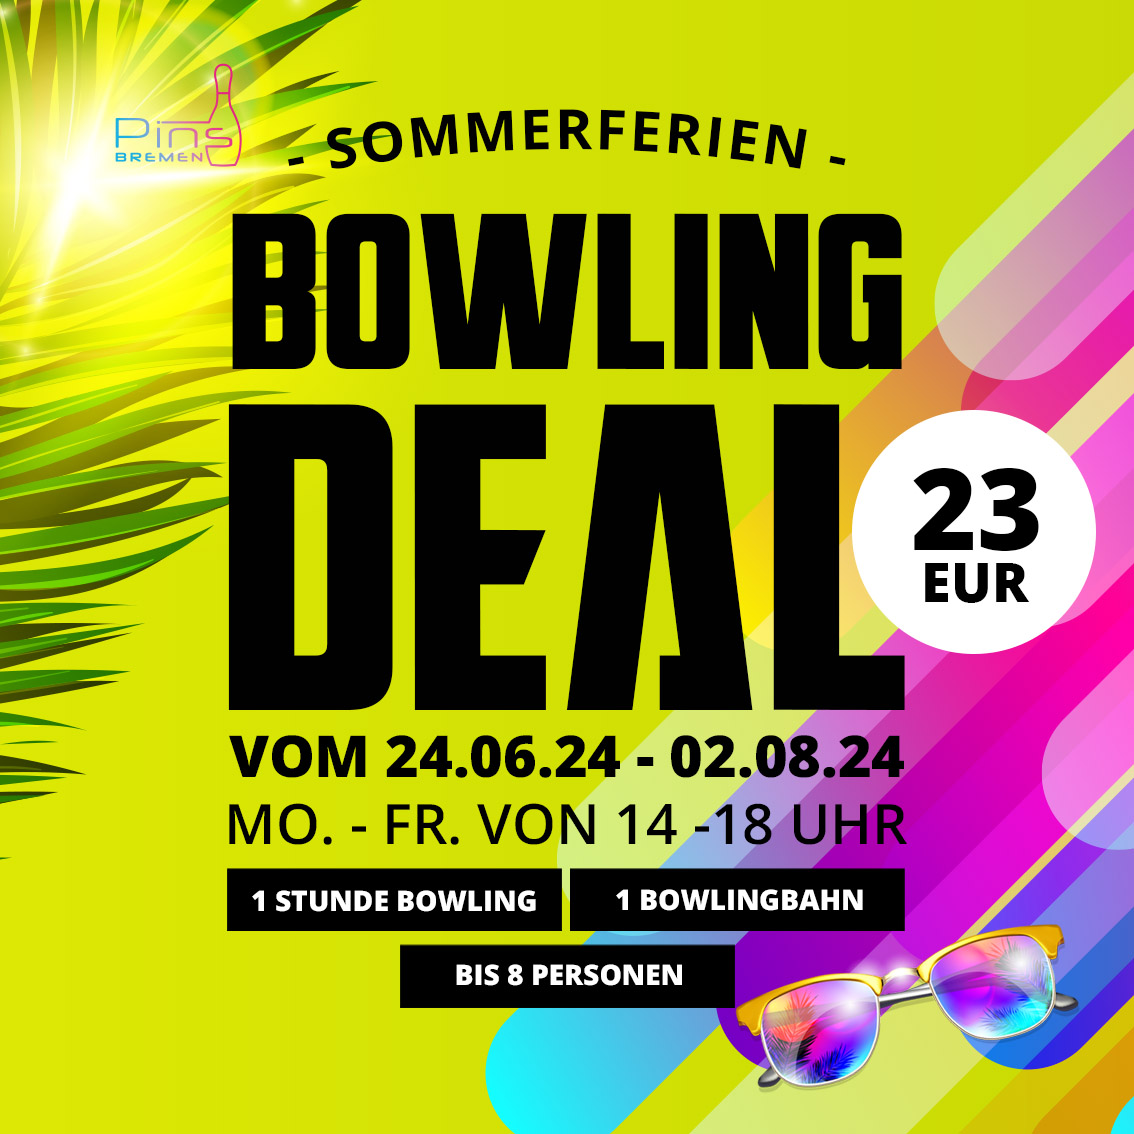 Aktion: Sommerferien Bowling Deal im Pins Bremen Bowling